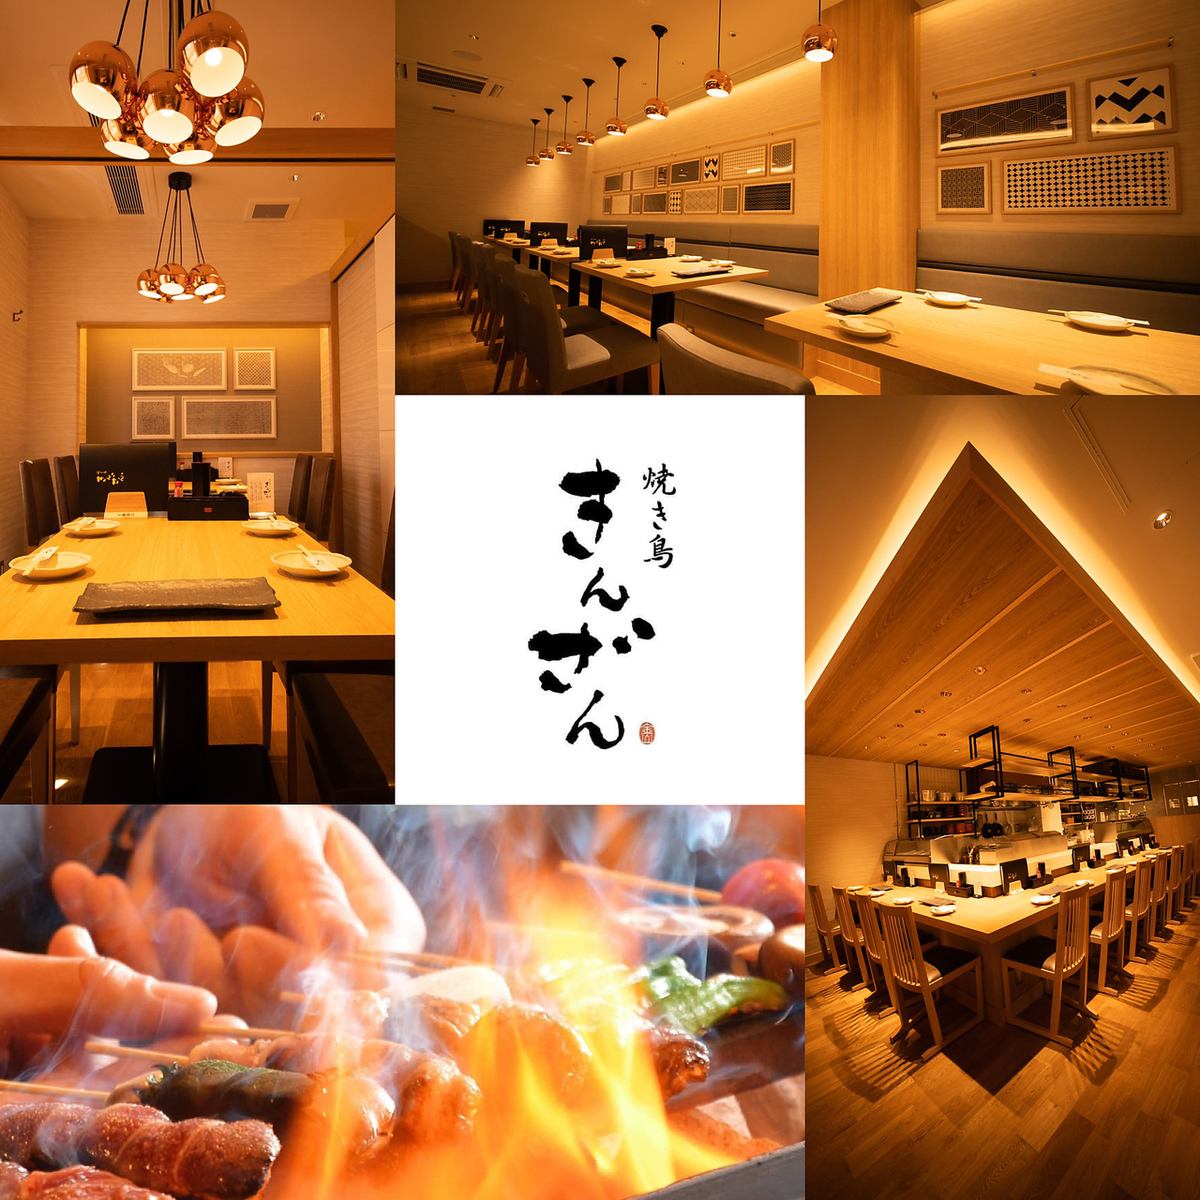 愛知縣著名的烤雞肉串餐廳“金山”。在時尚的空間享受烤雞肉串♪